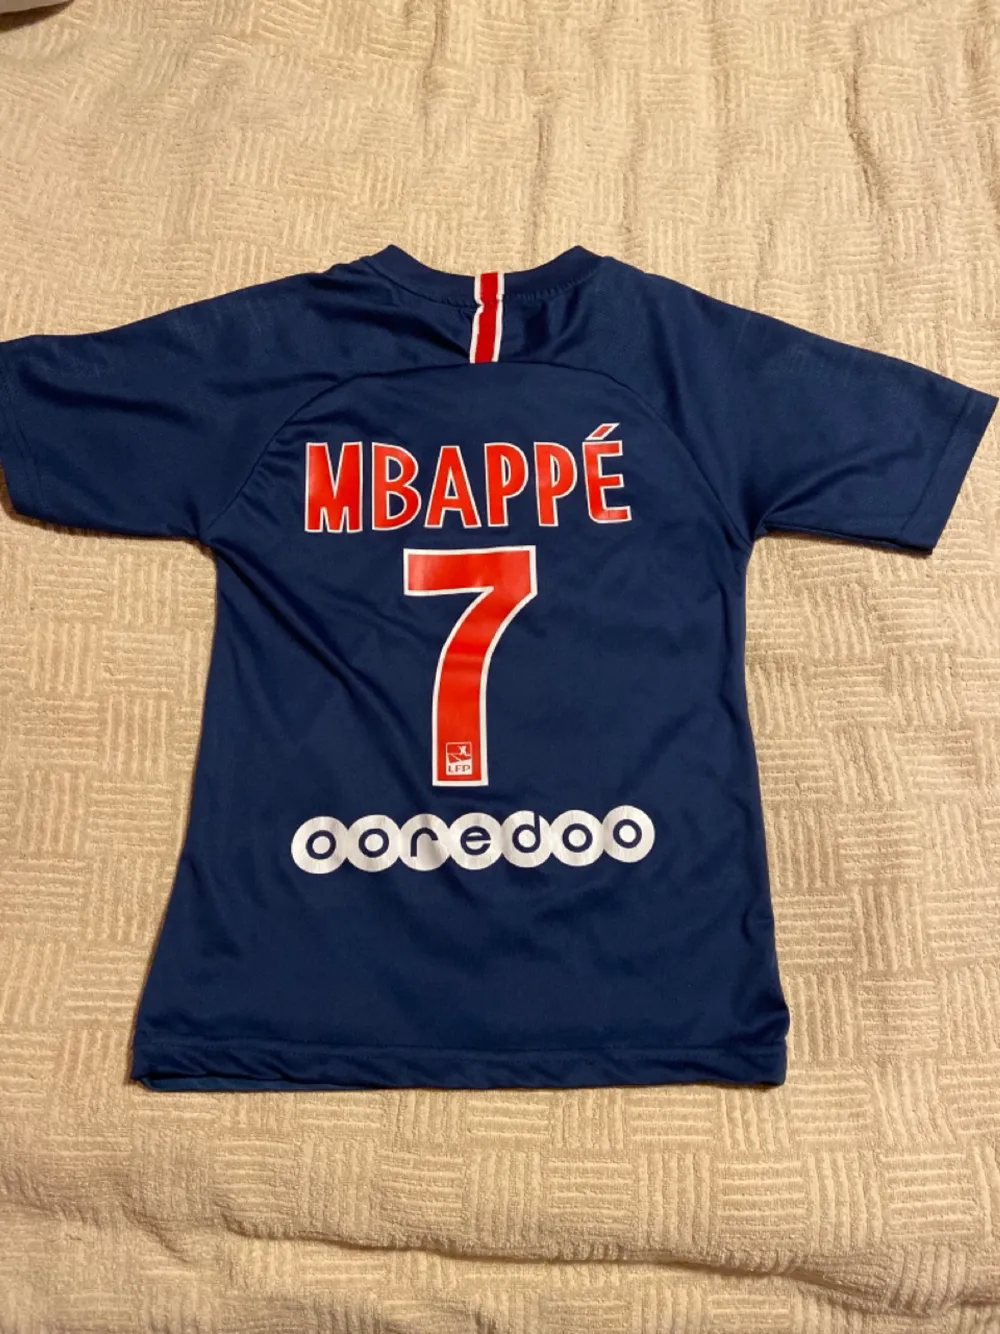 Mbappé nummer 7  Gjord i Kambodja  . T-shirts.